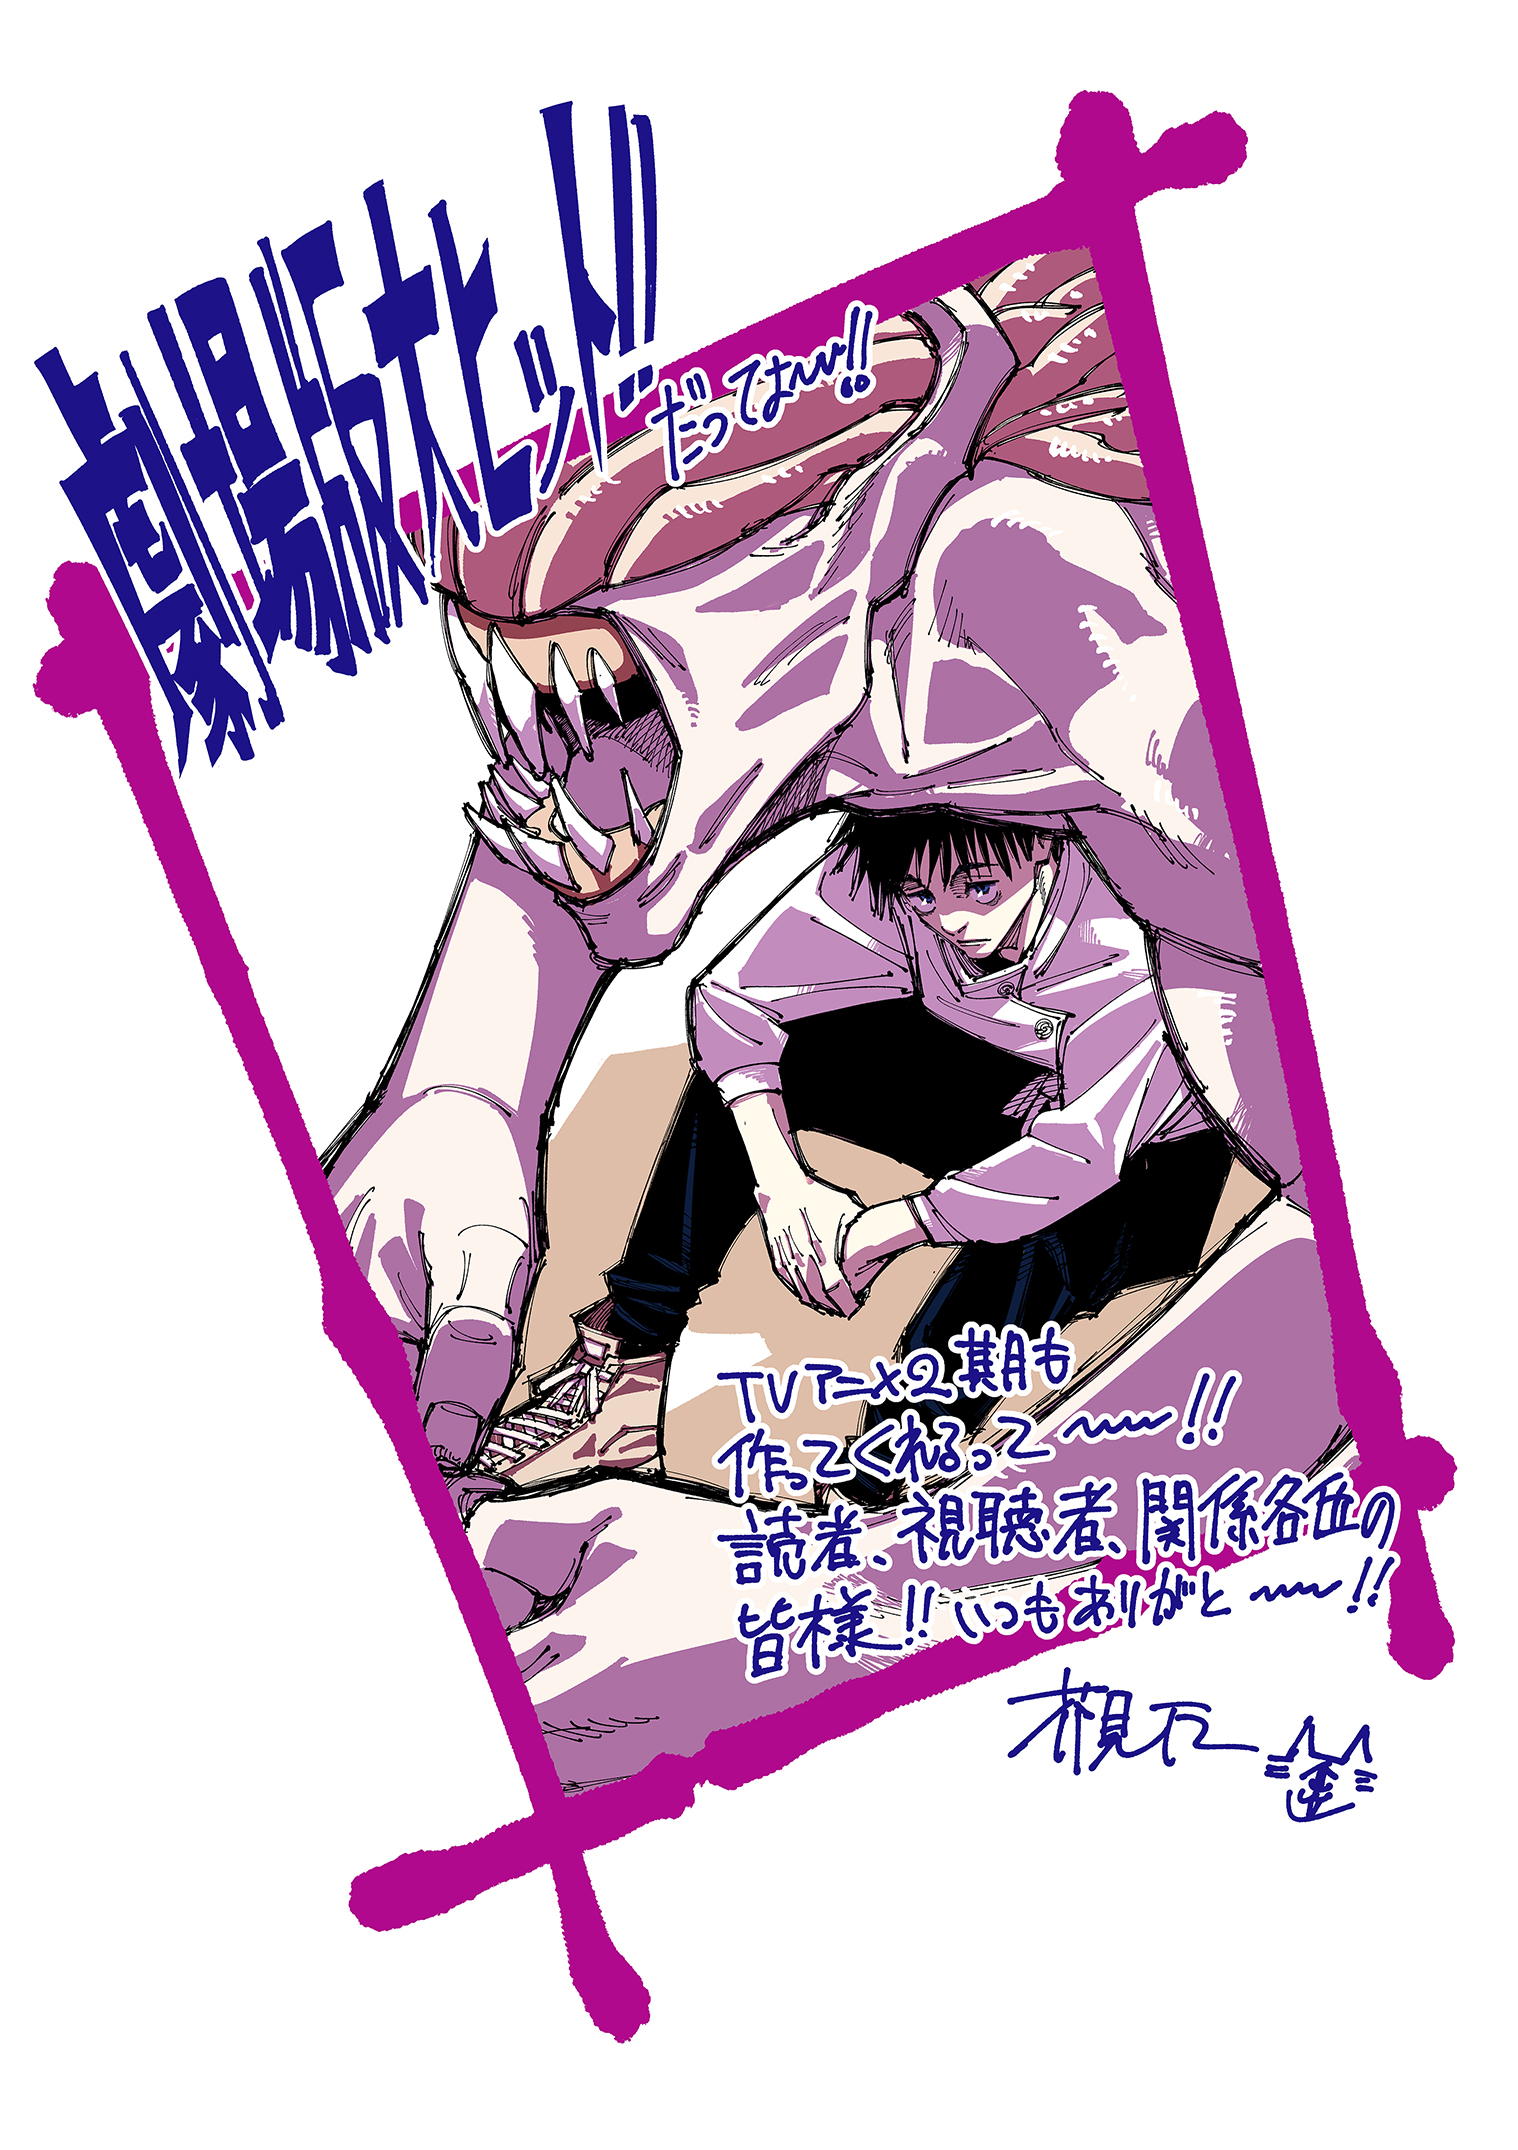 Jujutsu Kaisen – 2º Temporada será dividida em 2 partes (2 cours) - Manga  Livre RS